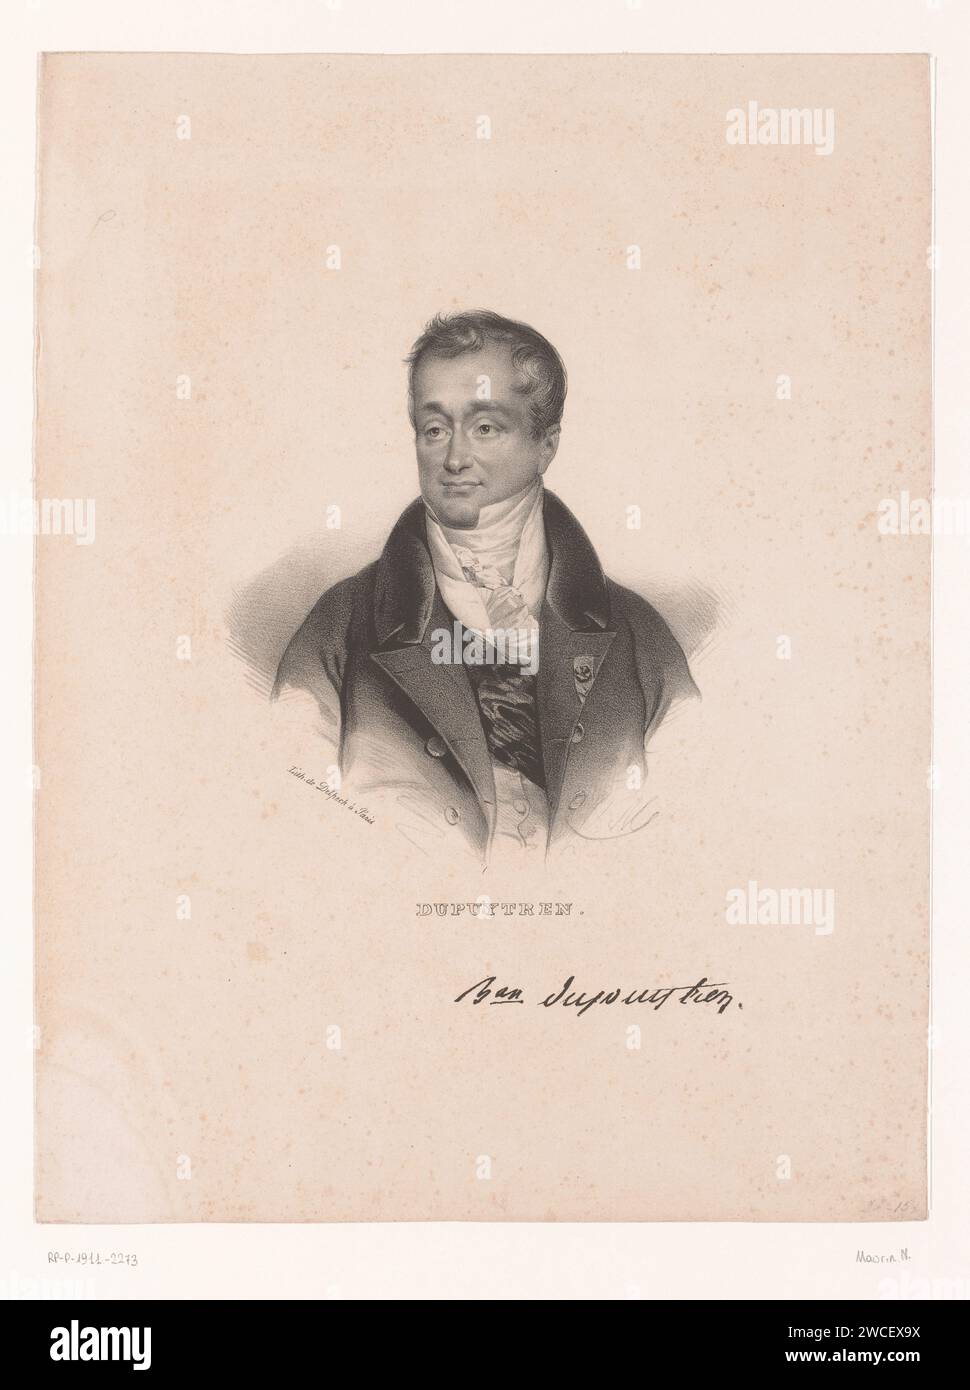 Porträt von Guillaume Dupuytren, Nicolas Maurin, 1825 - 1842 Druck Pariser Papier historische Personen. Arzt, Arzt Stockfoto